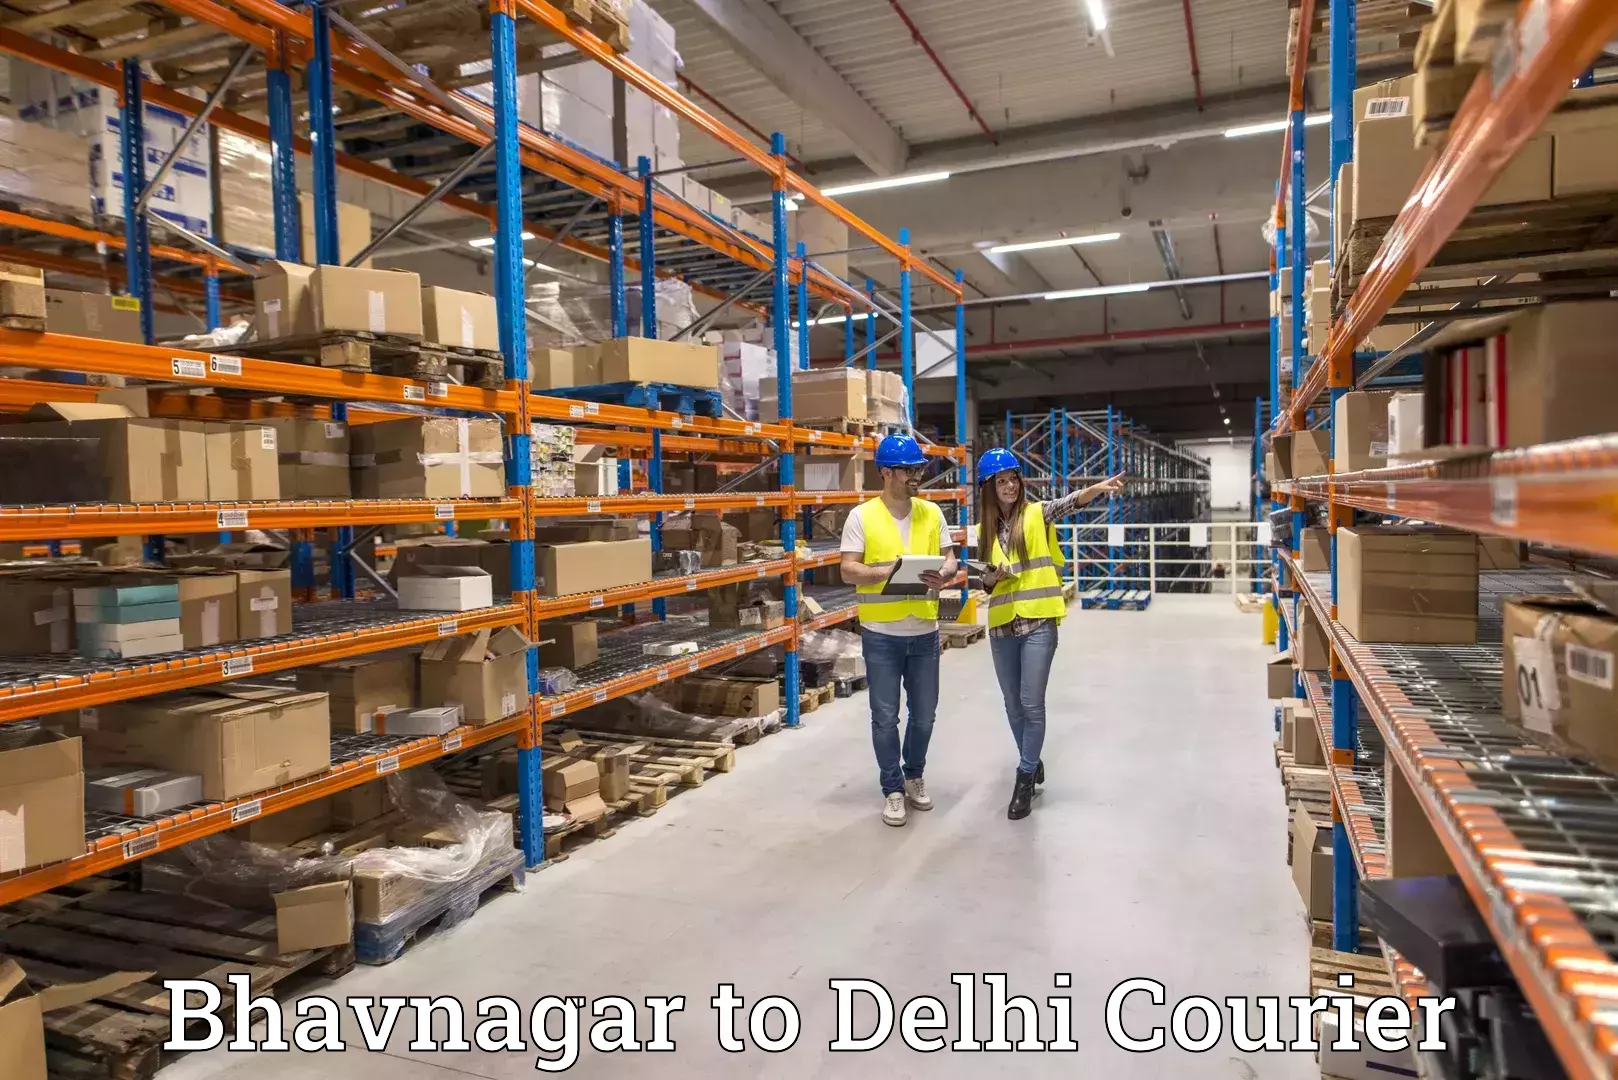 Fast delivery service Bhavnagar to Jamia Millia Islamia New Delhi